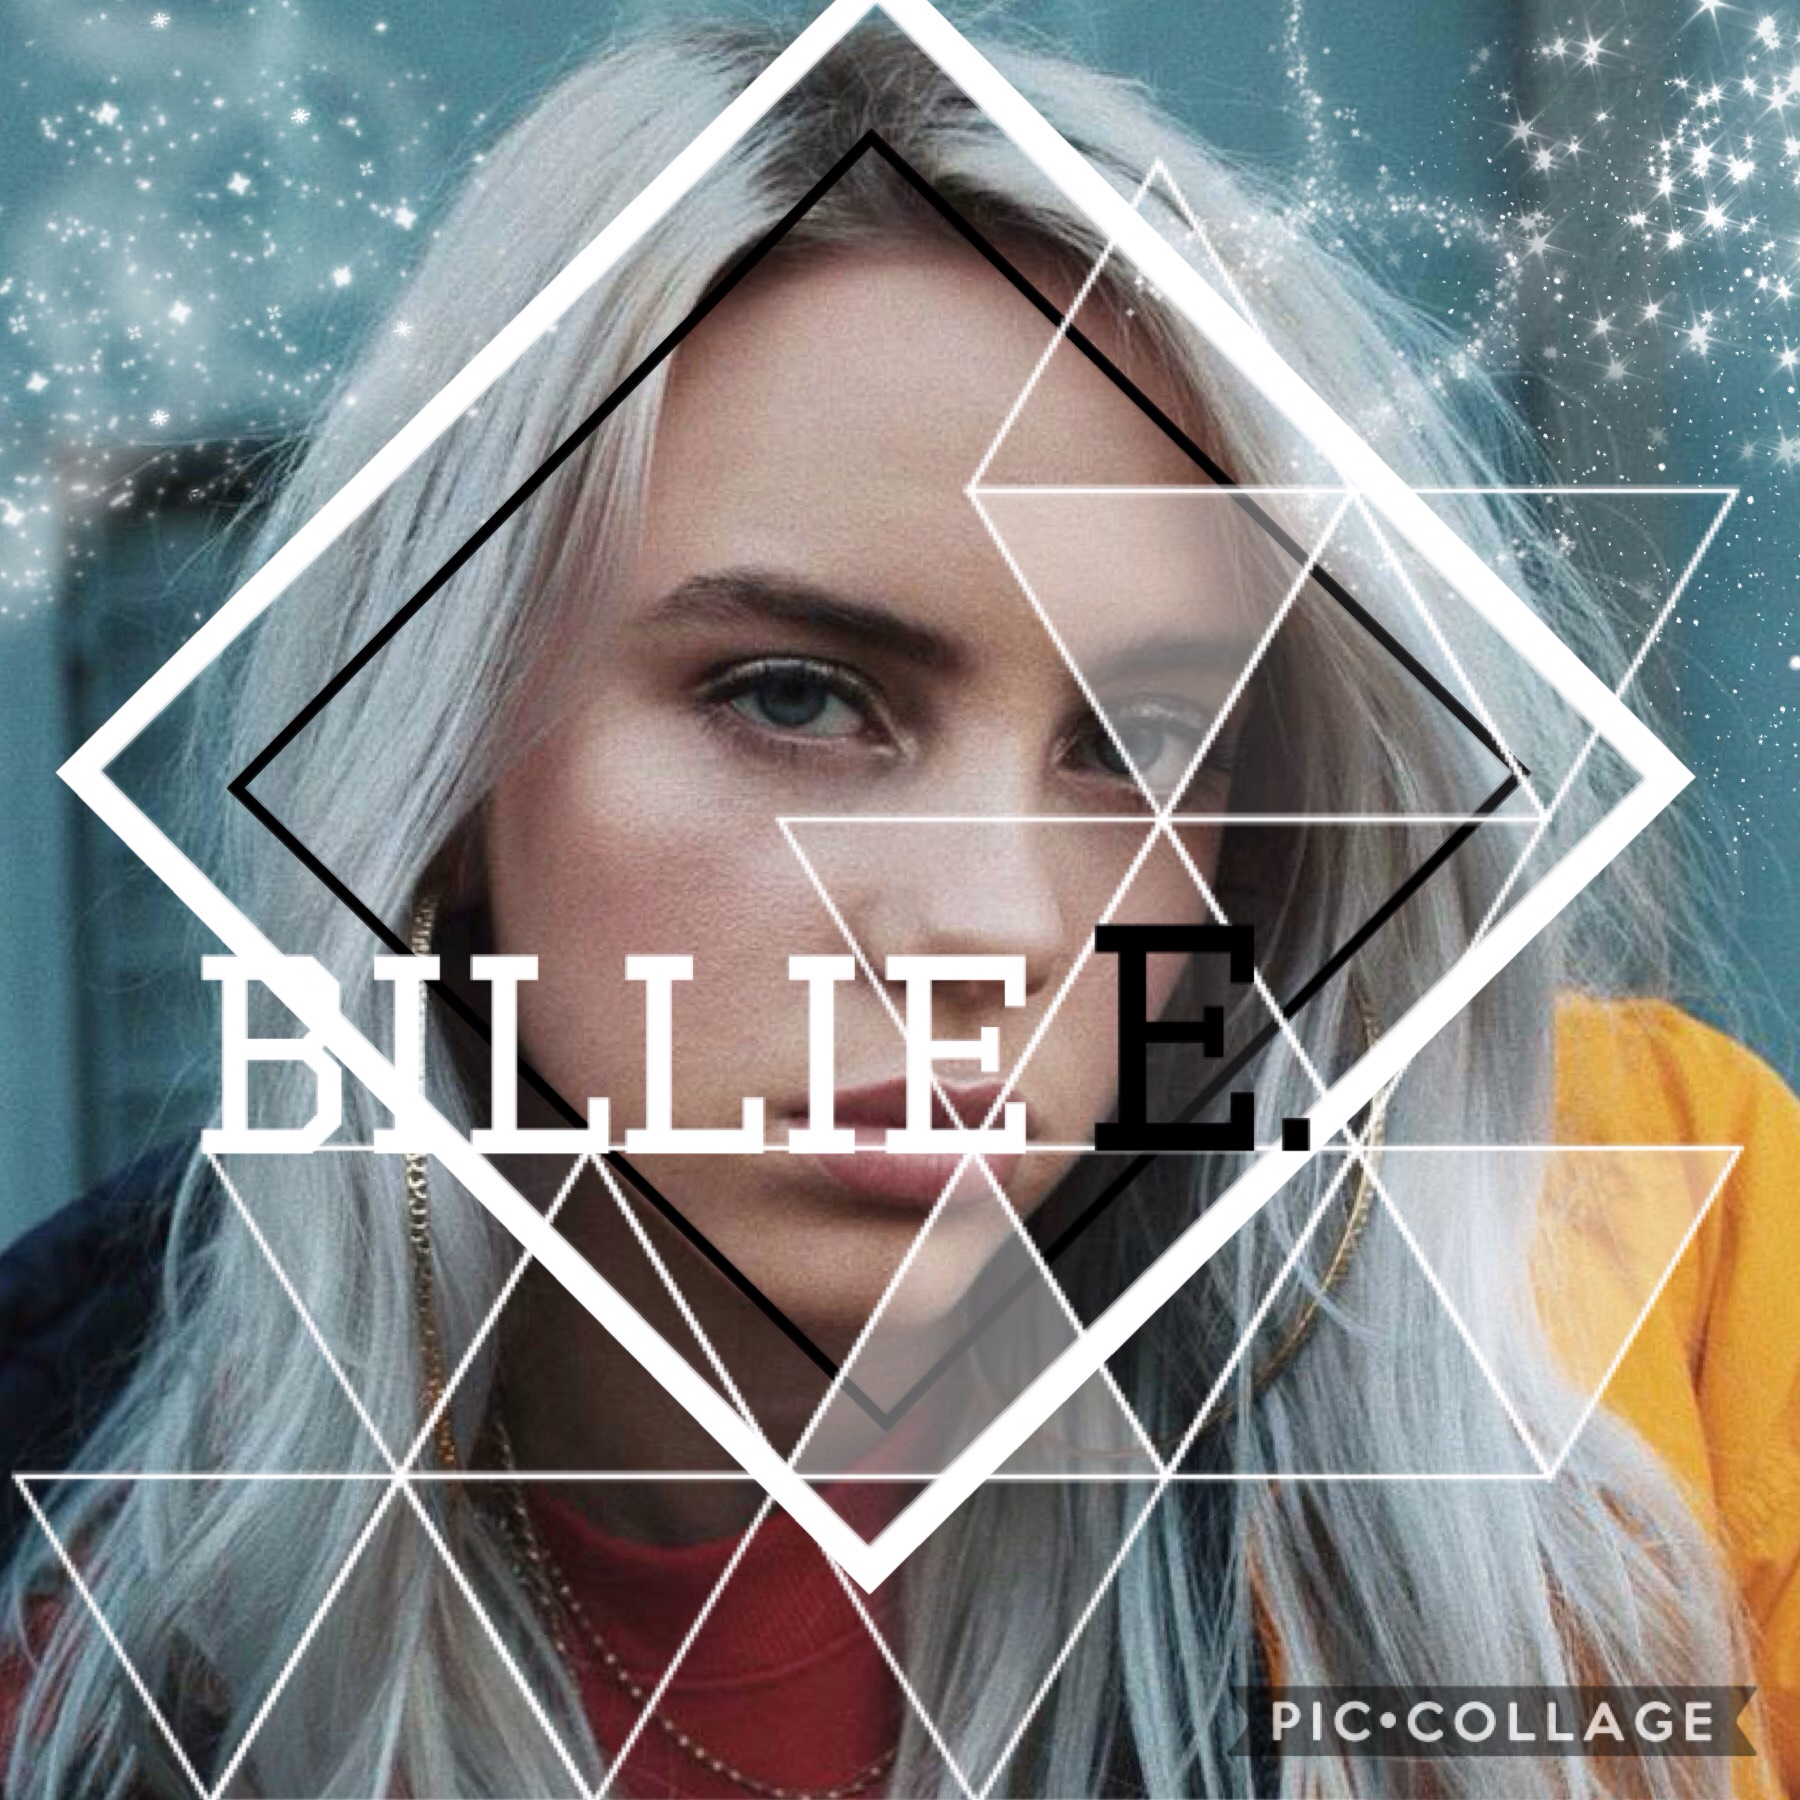 Billie, love her, great voice ❤️🎙